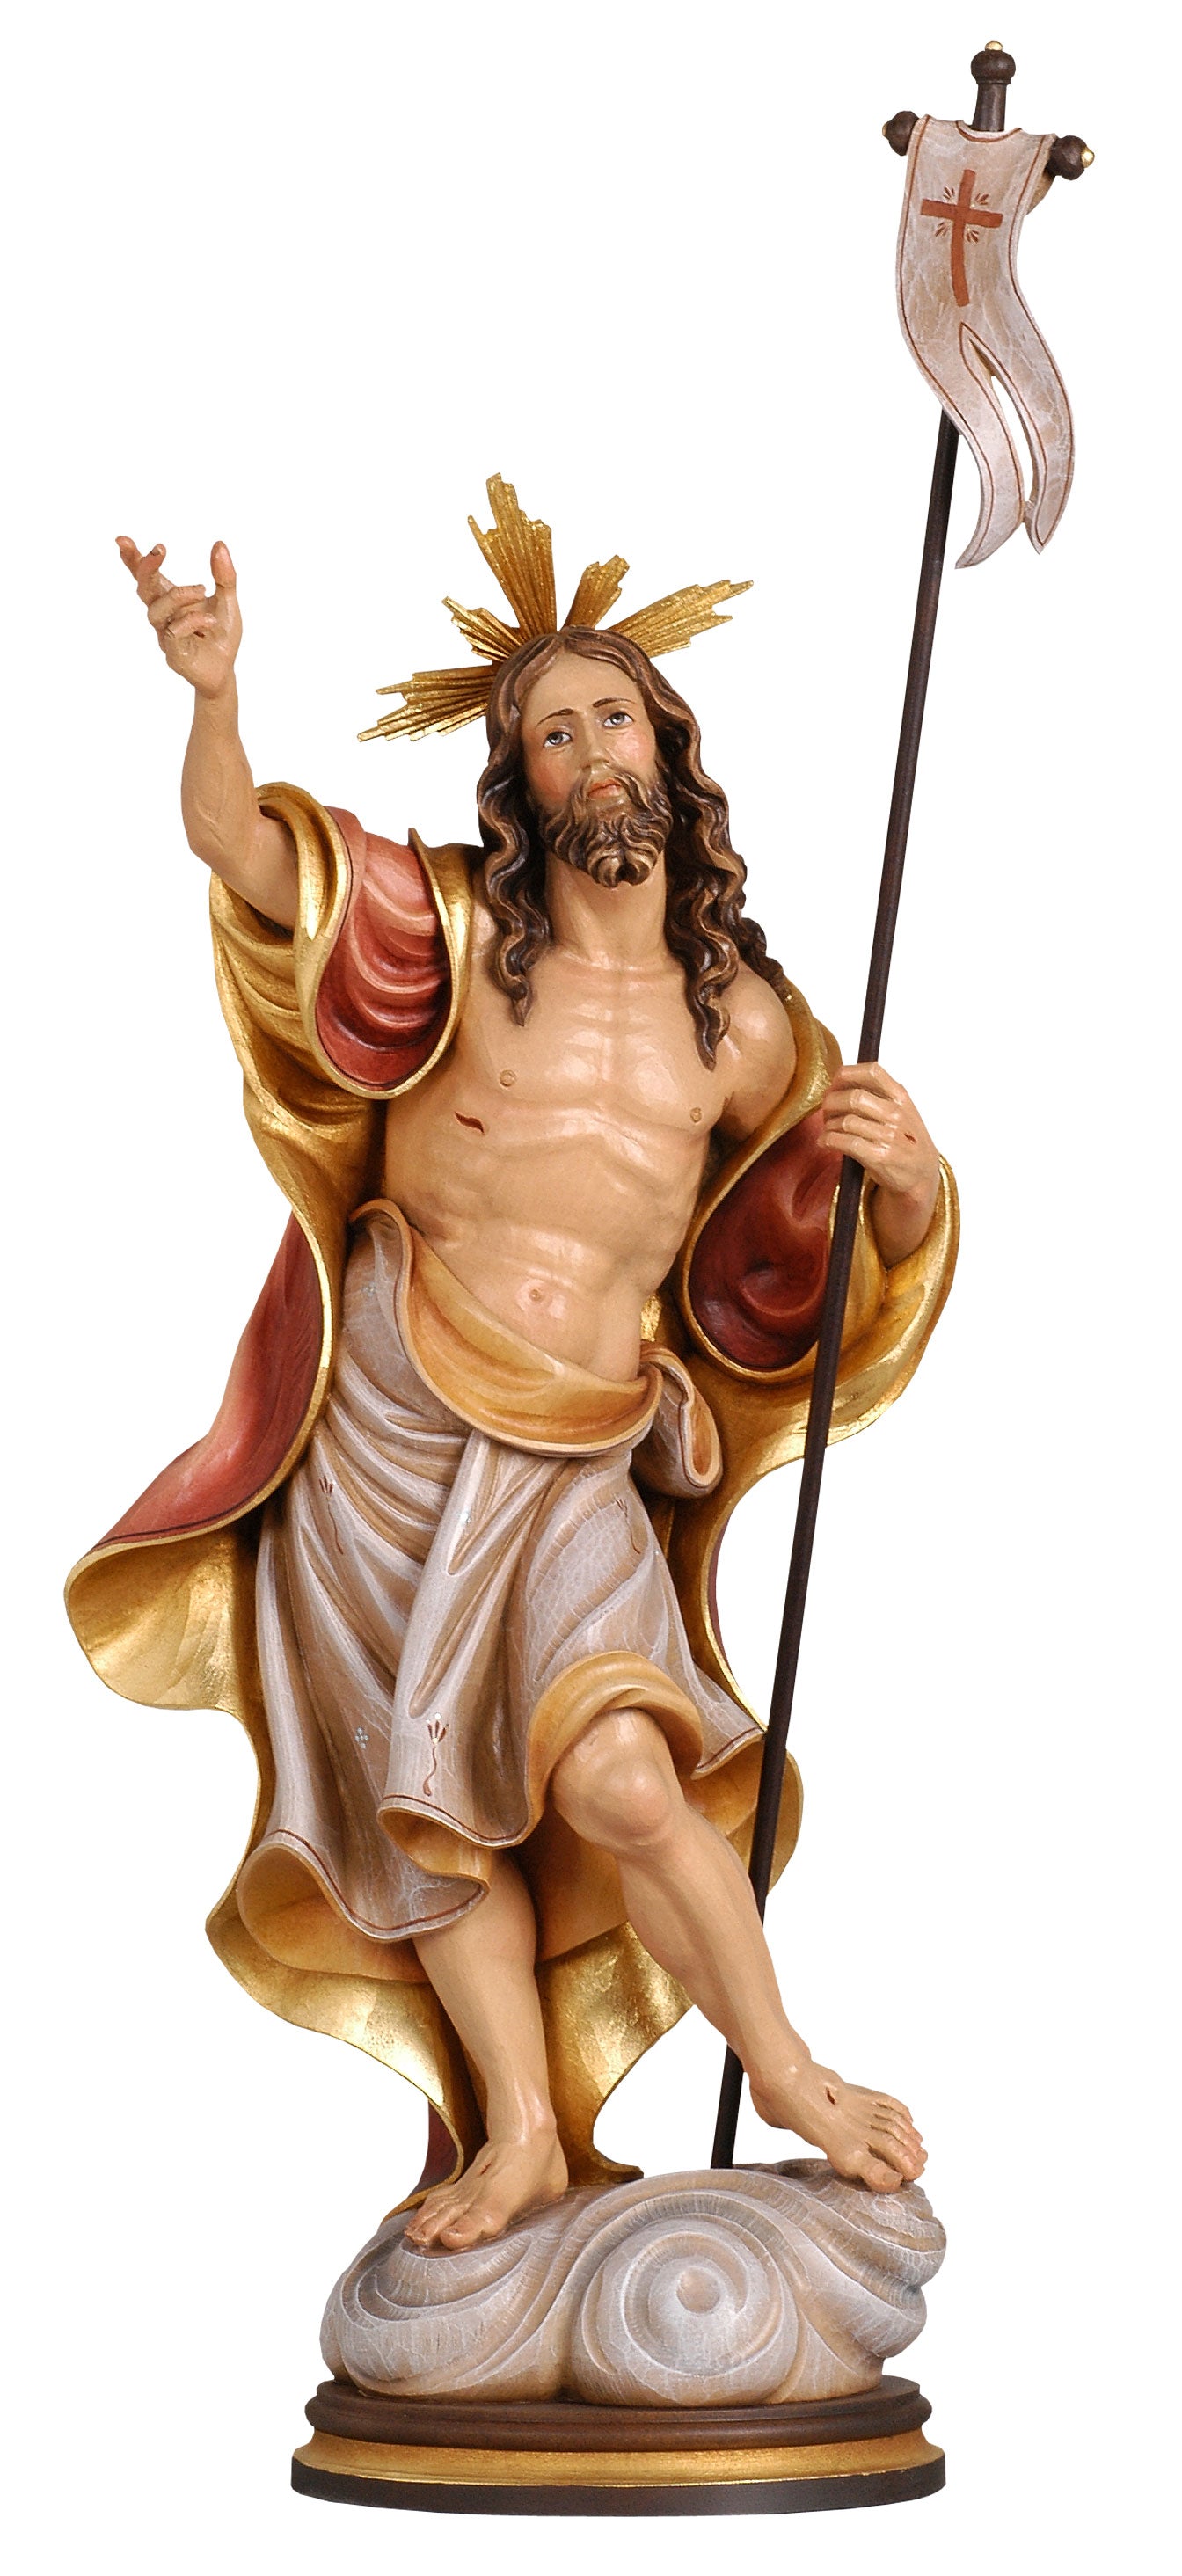 risen-christ-cross-flag-woodcarved-statue-232.jpg